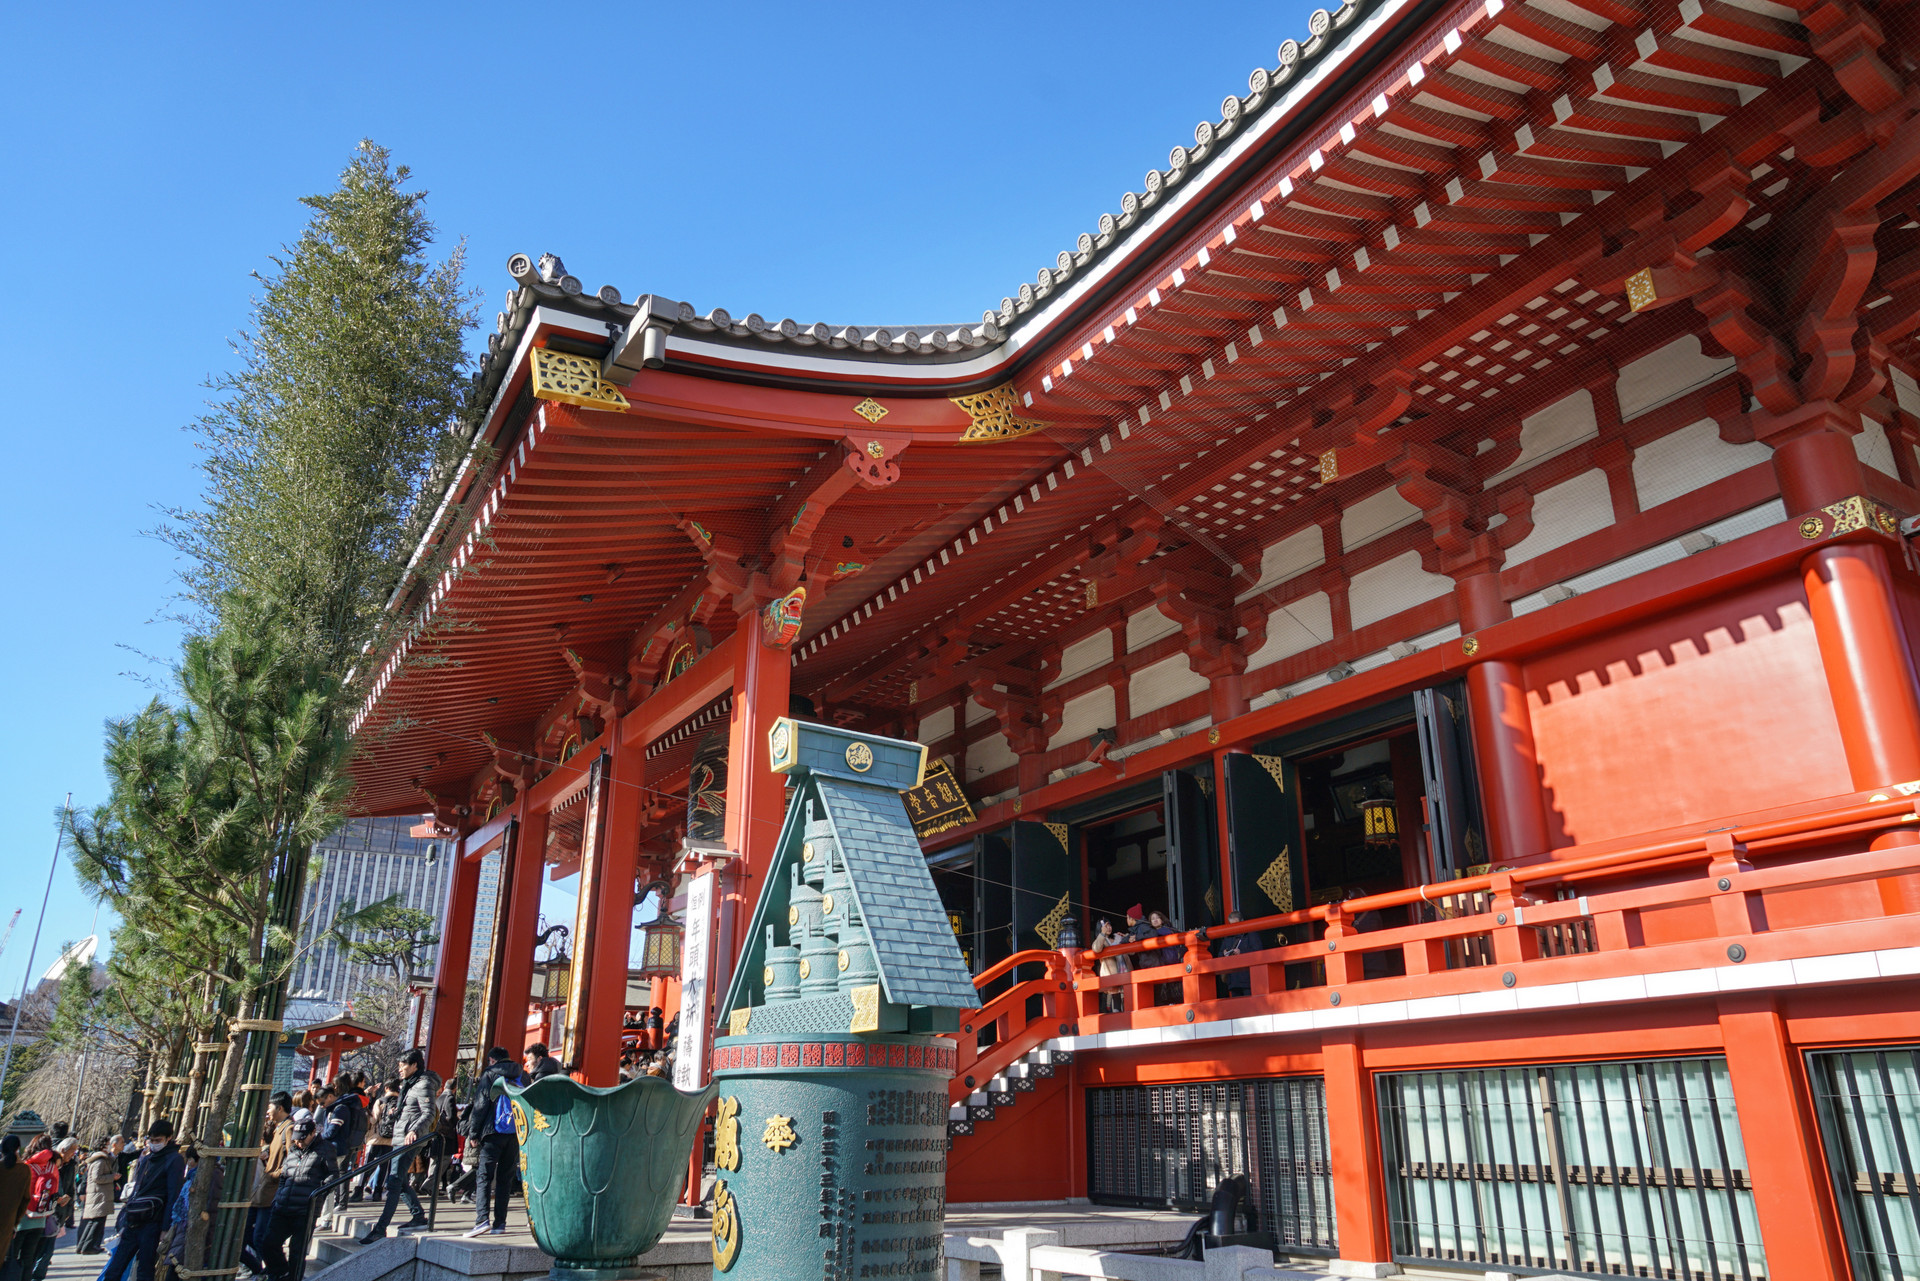 原创日本东京最古老的寺庙,比河南少林寺晚133年,成知名景点